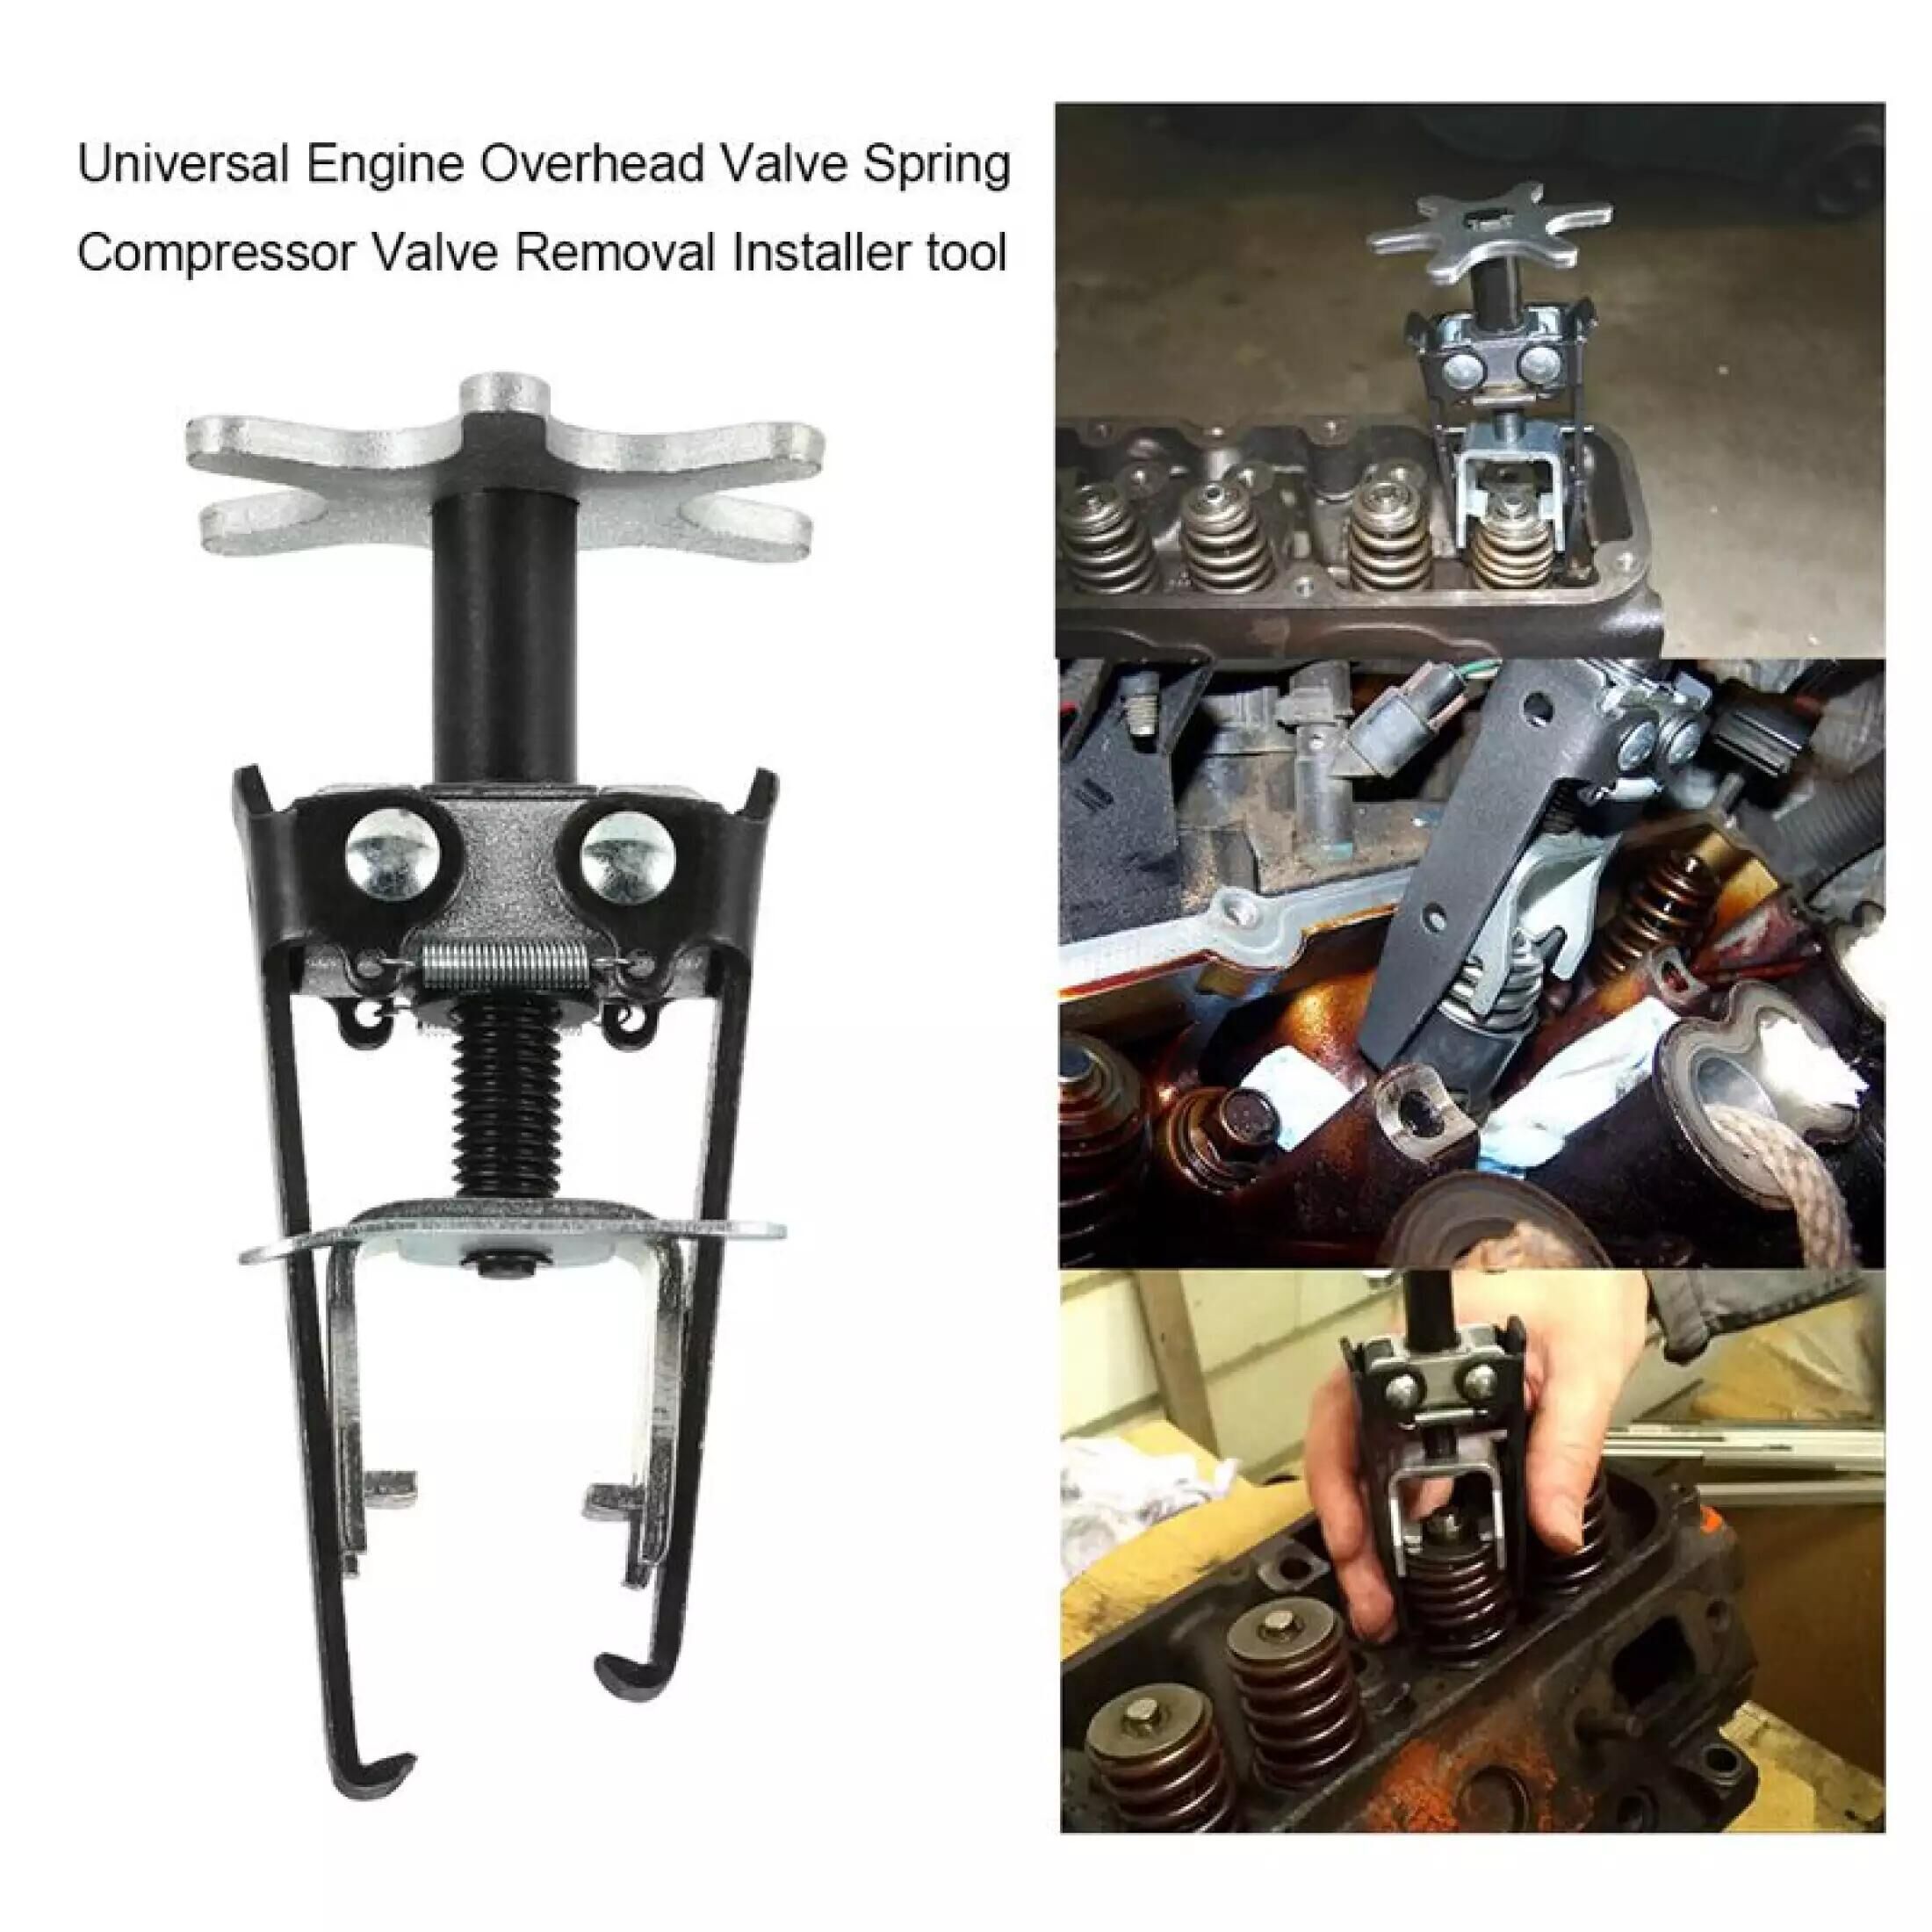 Valve Spring Compressor-Carbon Steel Universal Engine Overhead Valve Spring Compressor Valve Removal Installer Tool 